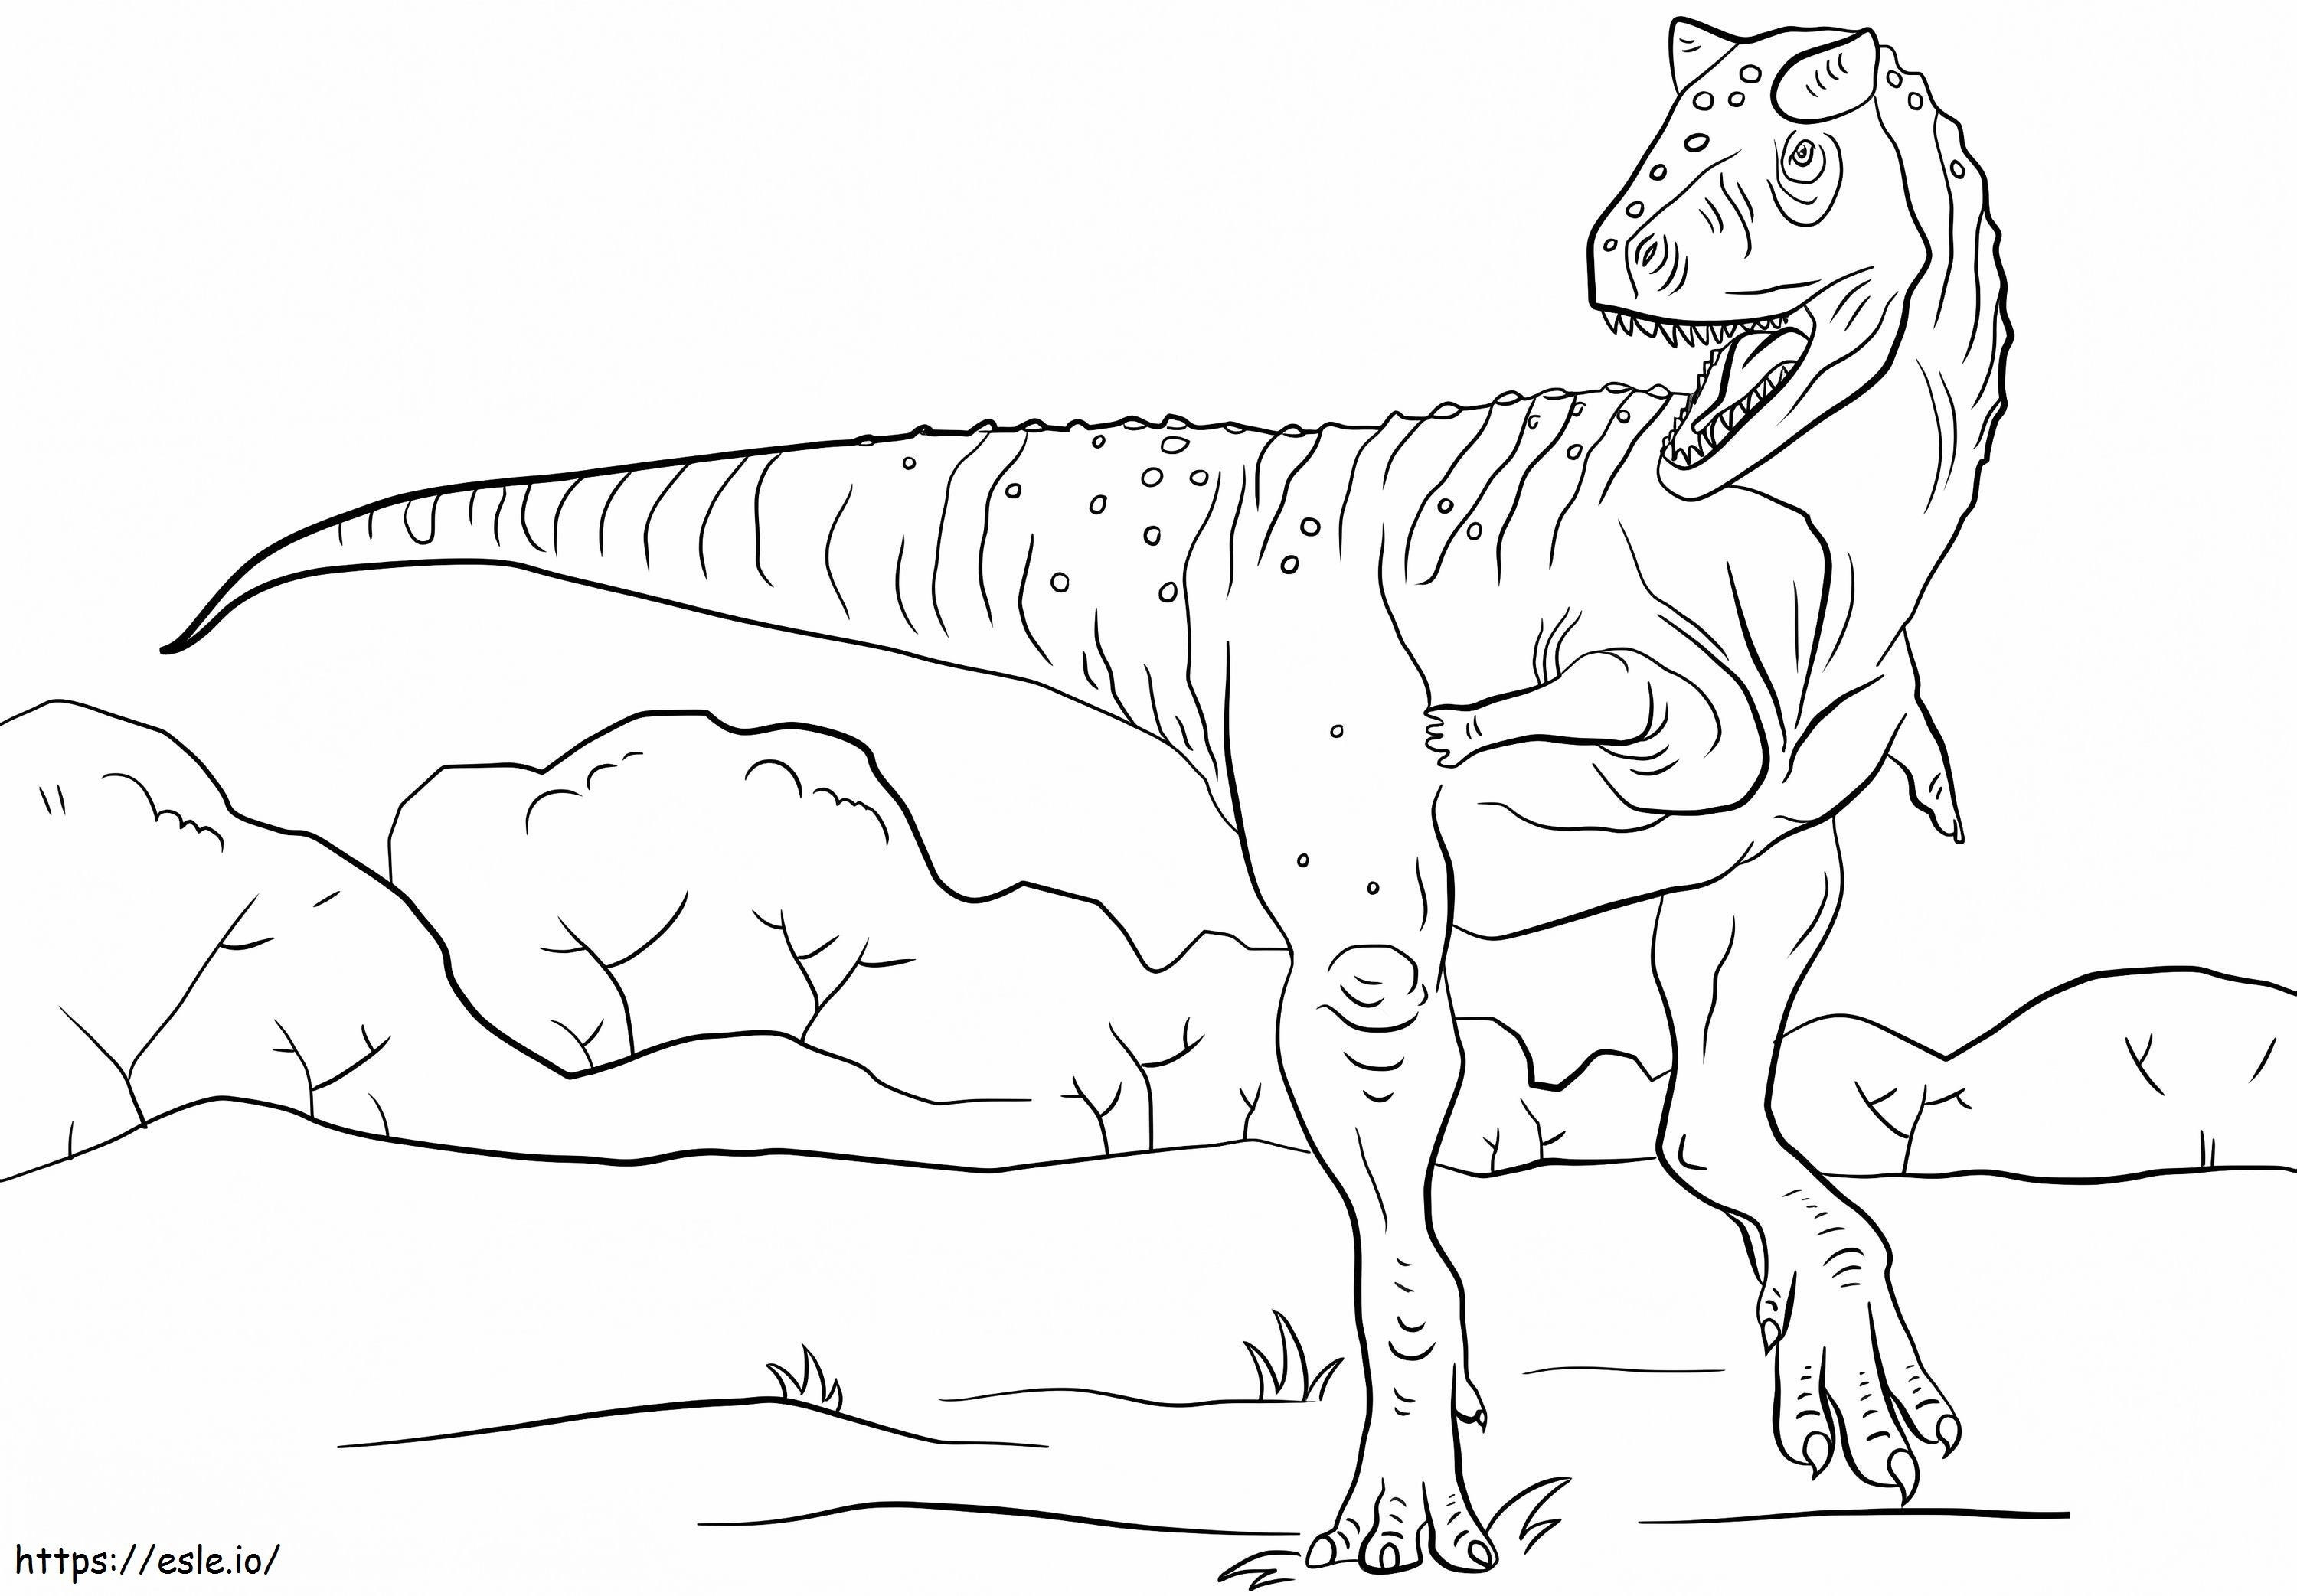 Dinozor Carnotaurus boyama